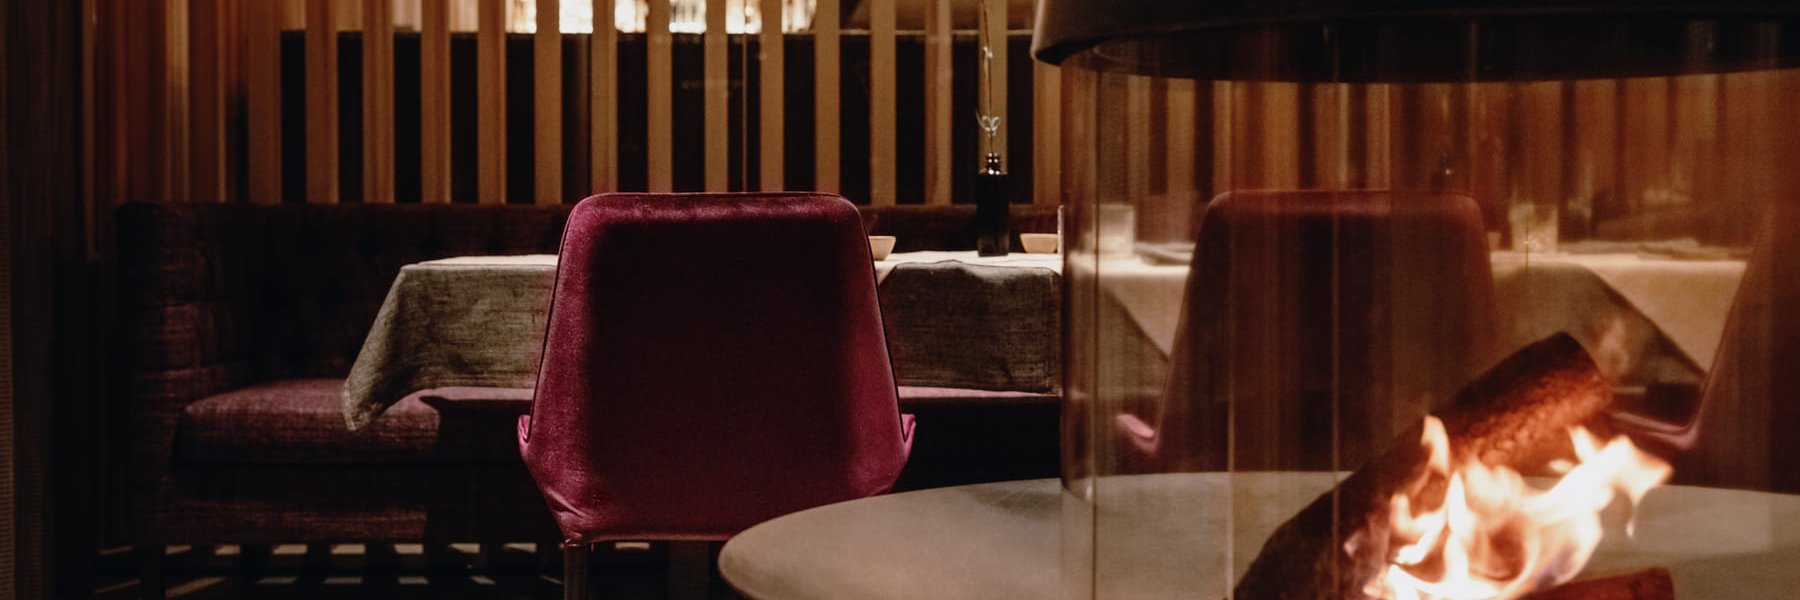 Offenes Kaminfeuer in einem modernen Restaurant mit gedeckten Tischen